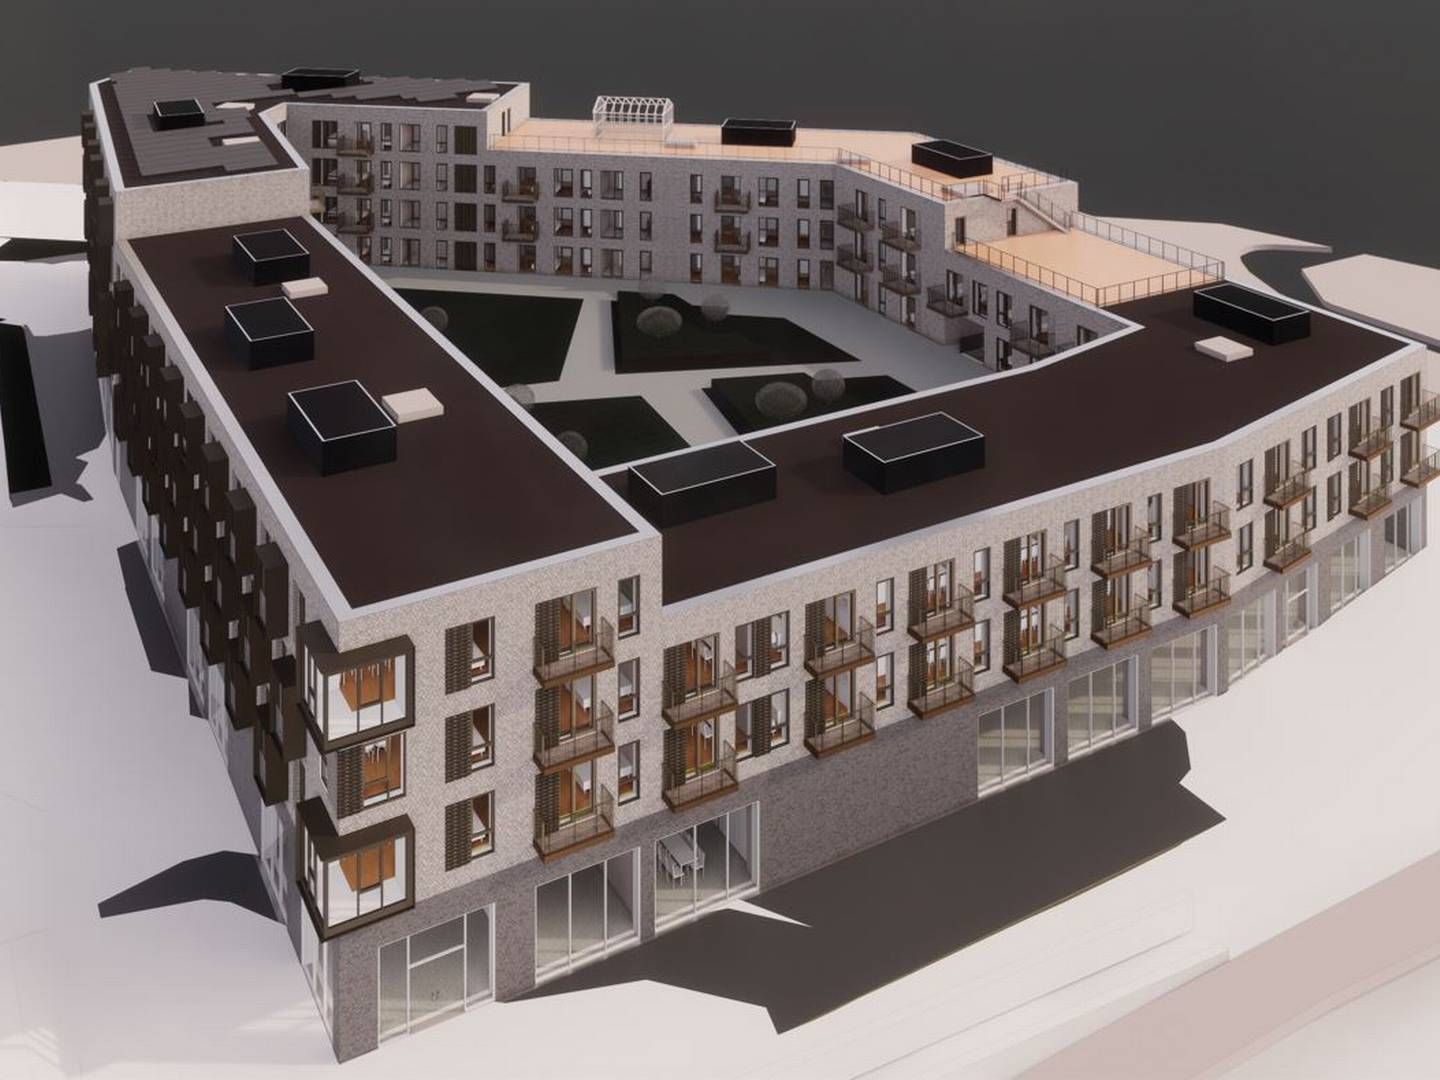 Det kommende byggeri i Hillerød bliver opført i 2-4 etager med en maksimalhøjde på 18 meter. | Foto: PR-visualisering